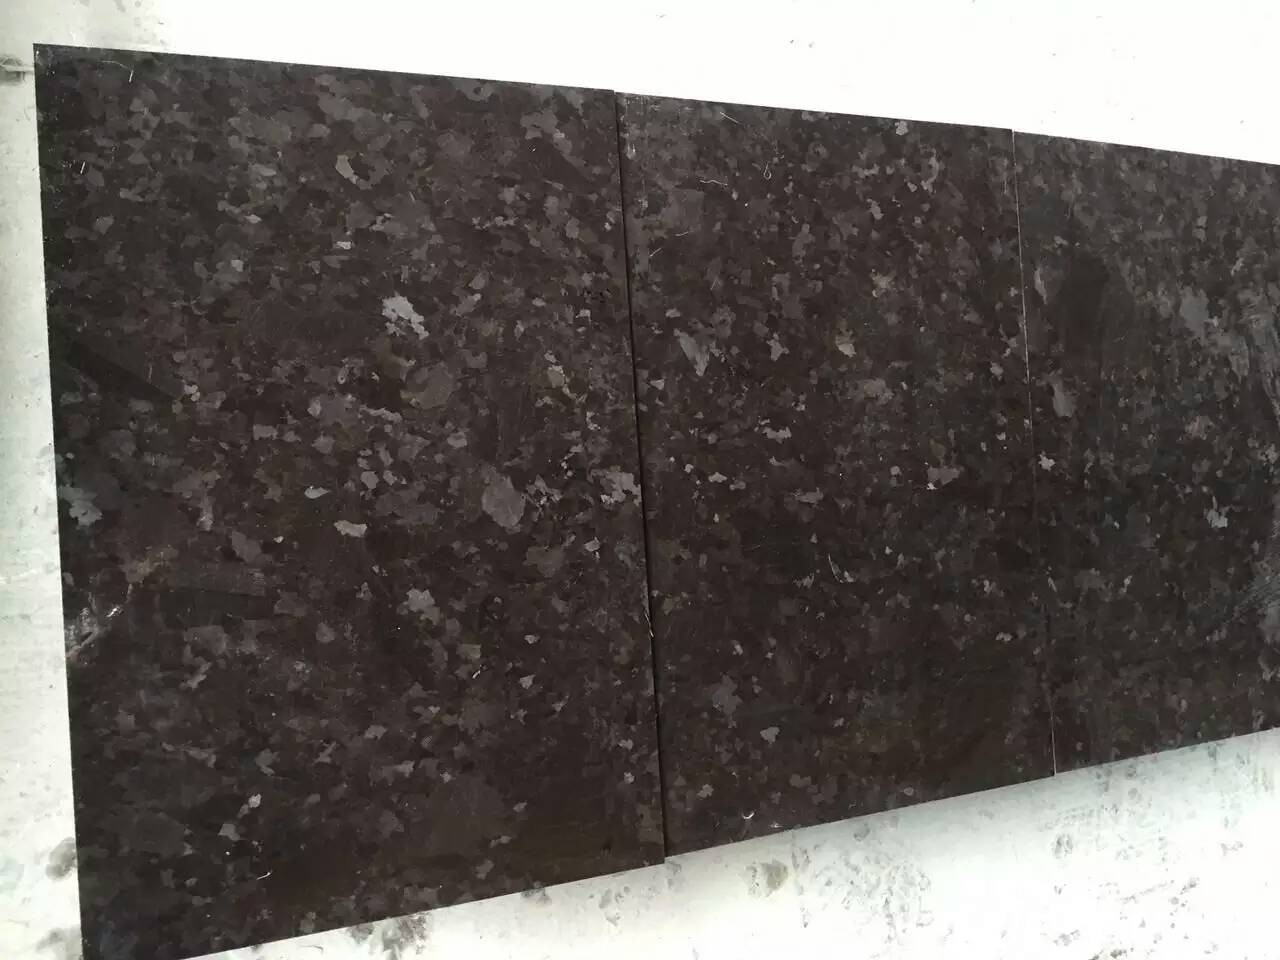 angola antique brown Granite countertops,worktops